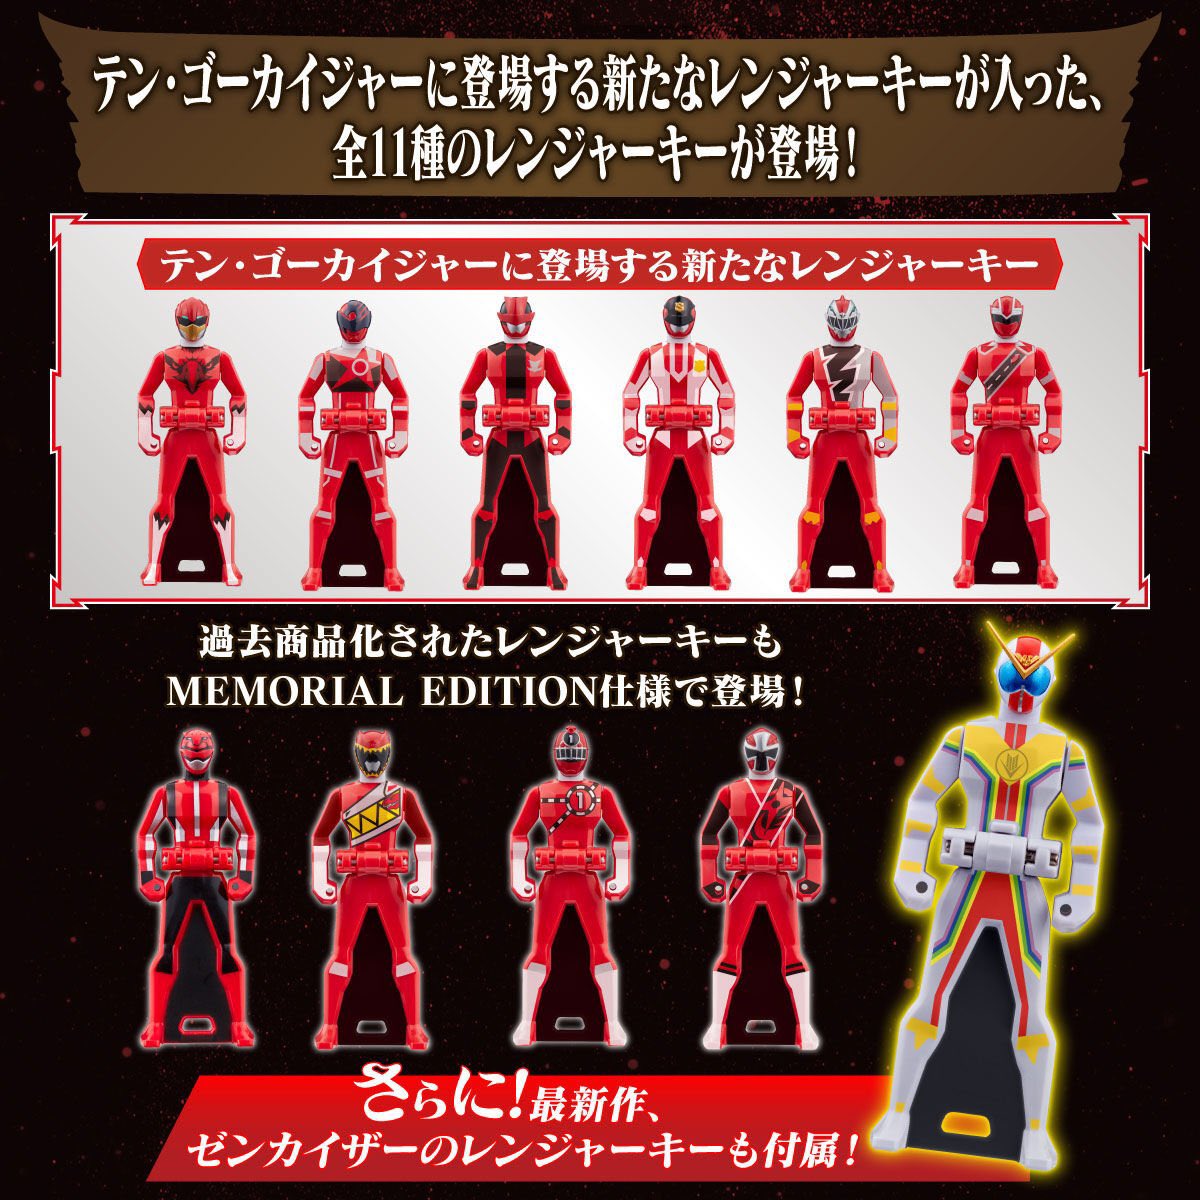 New Kaizoku Sentai Gokaiger Ranger Keys Revealed! - Tokunation